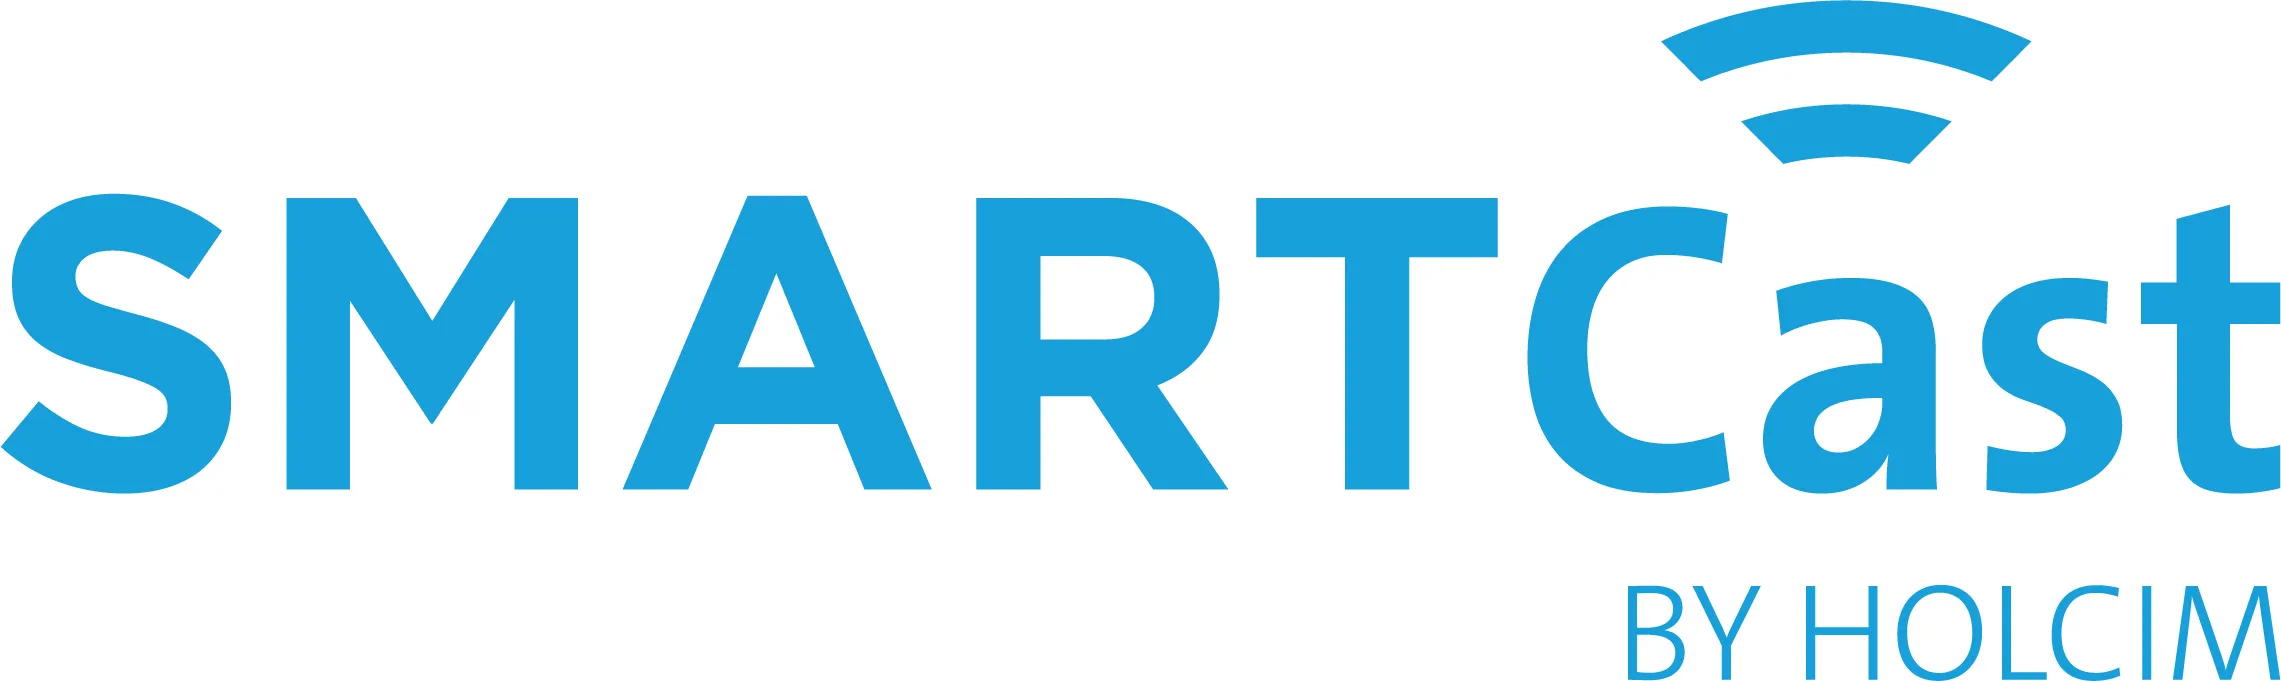 smartcast logo